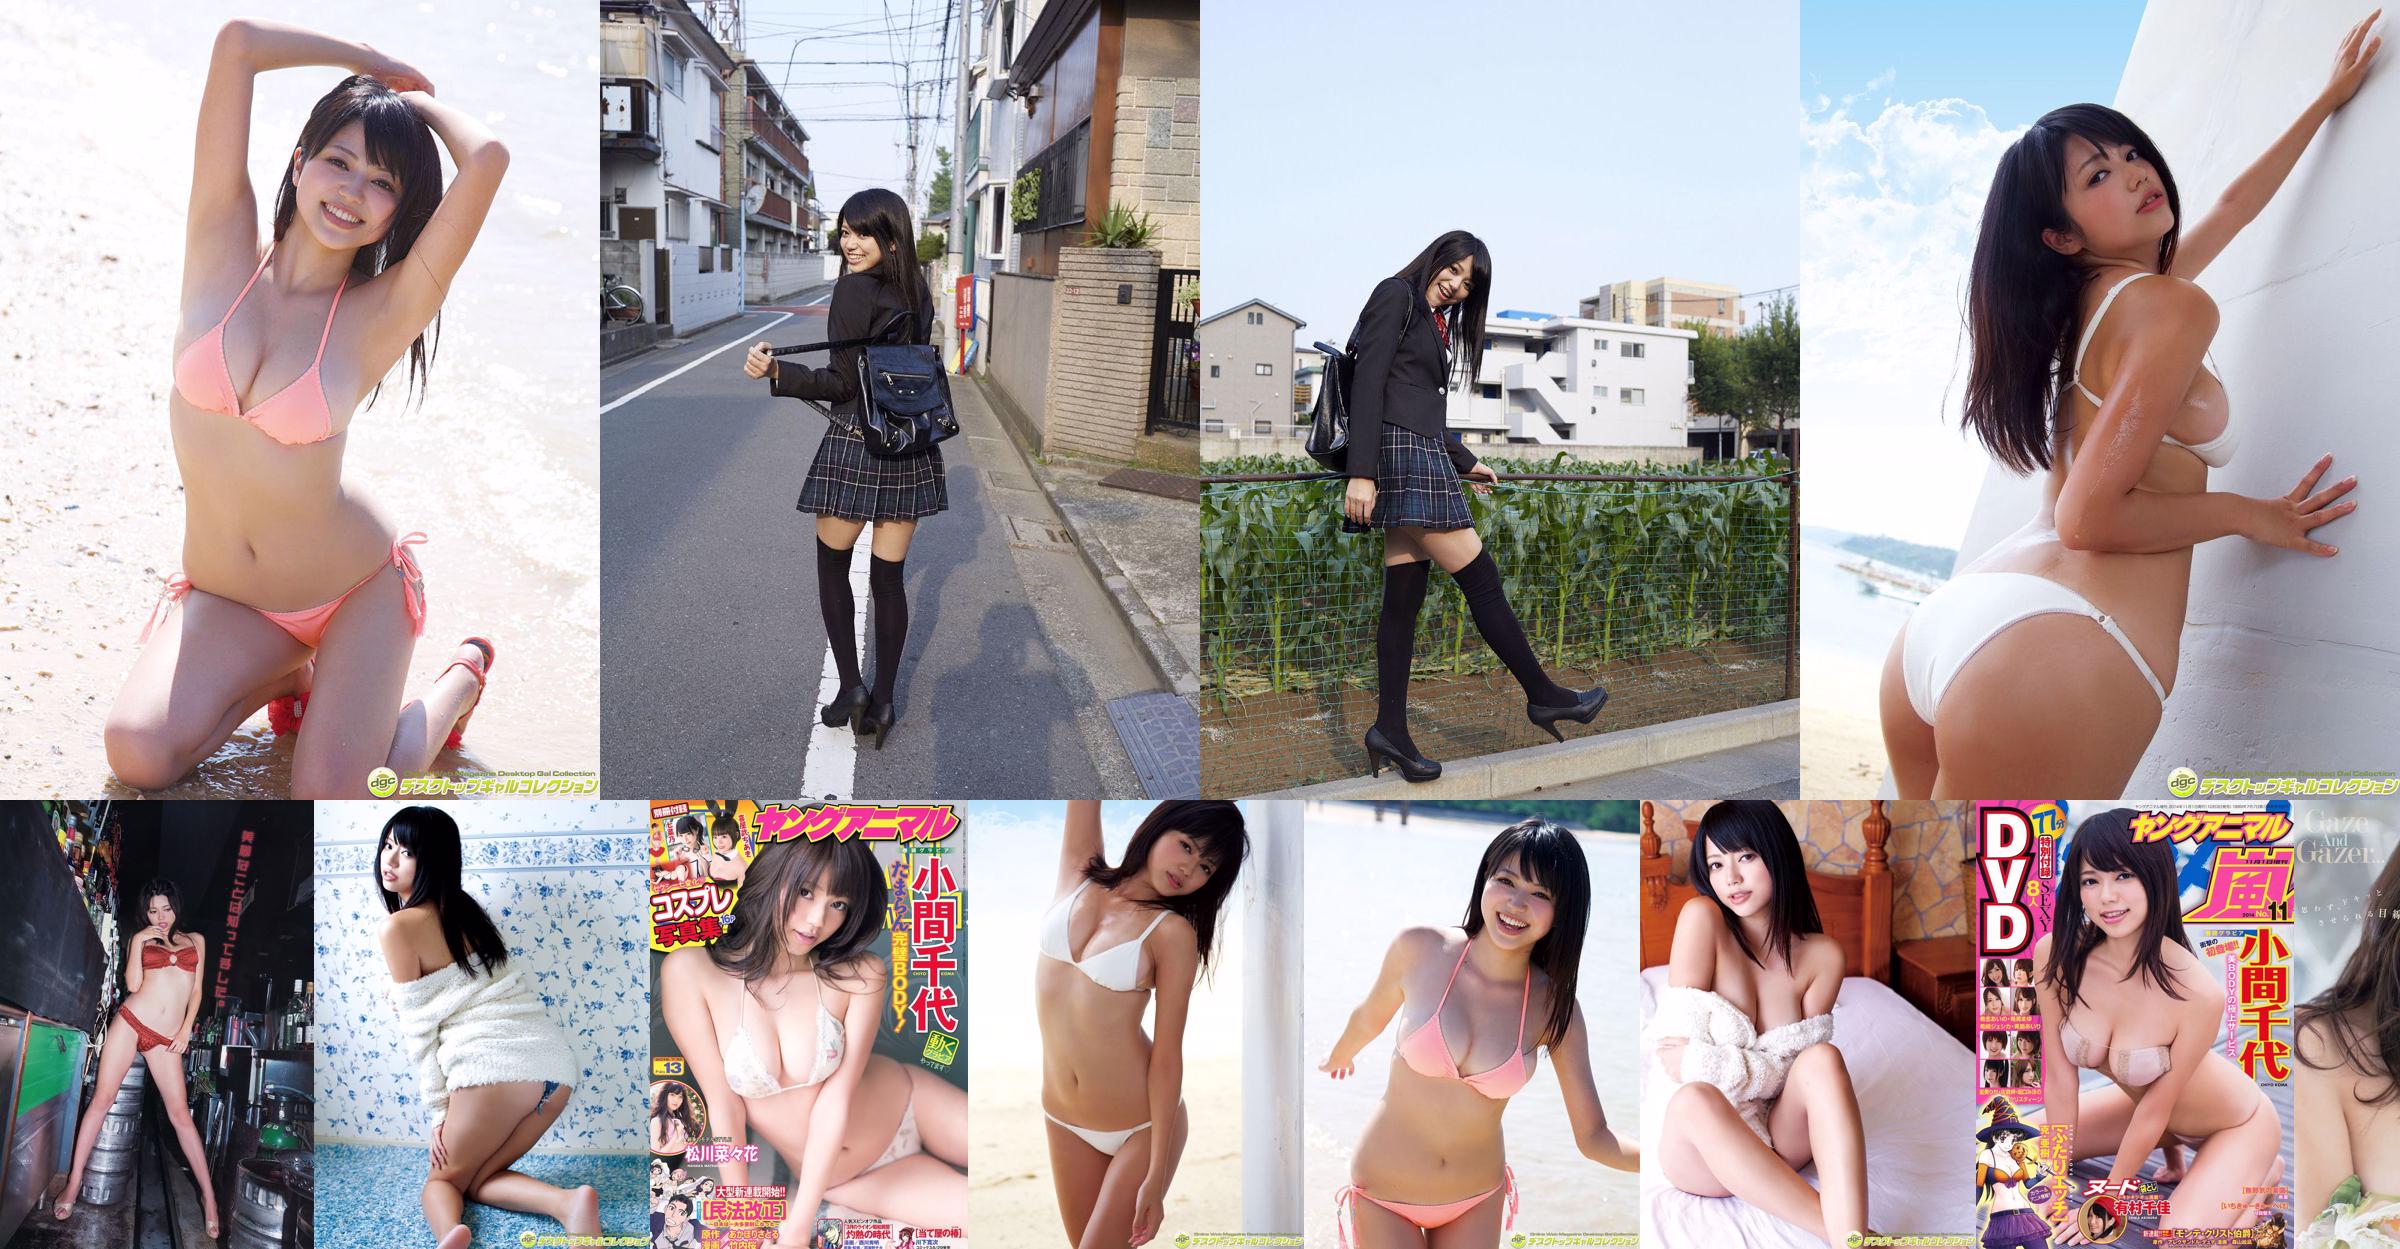 Chiyo Koma [Young Animal Arashi Special Issue] Tạp chí ảnh số 11 năm 2014 No.57f860 Trang 5